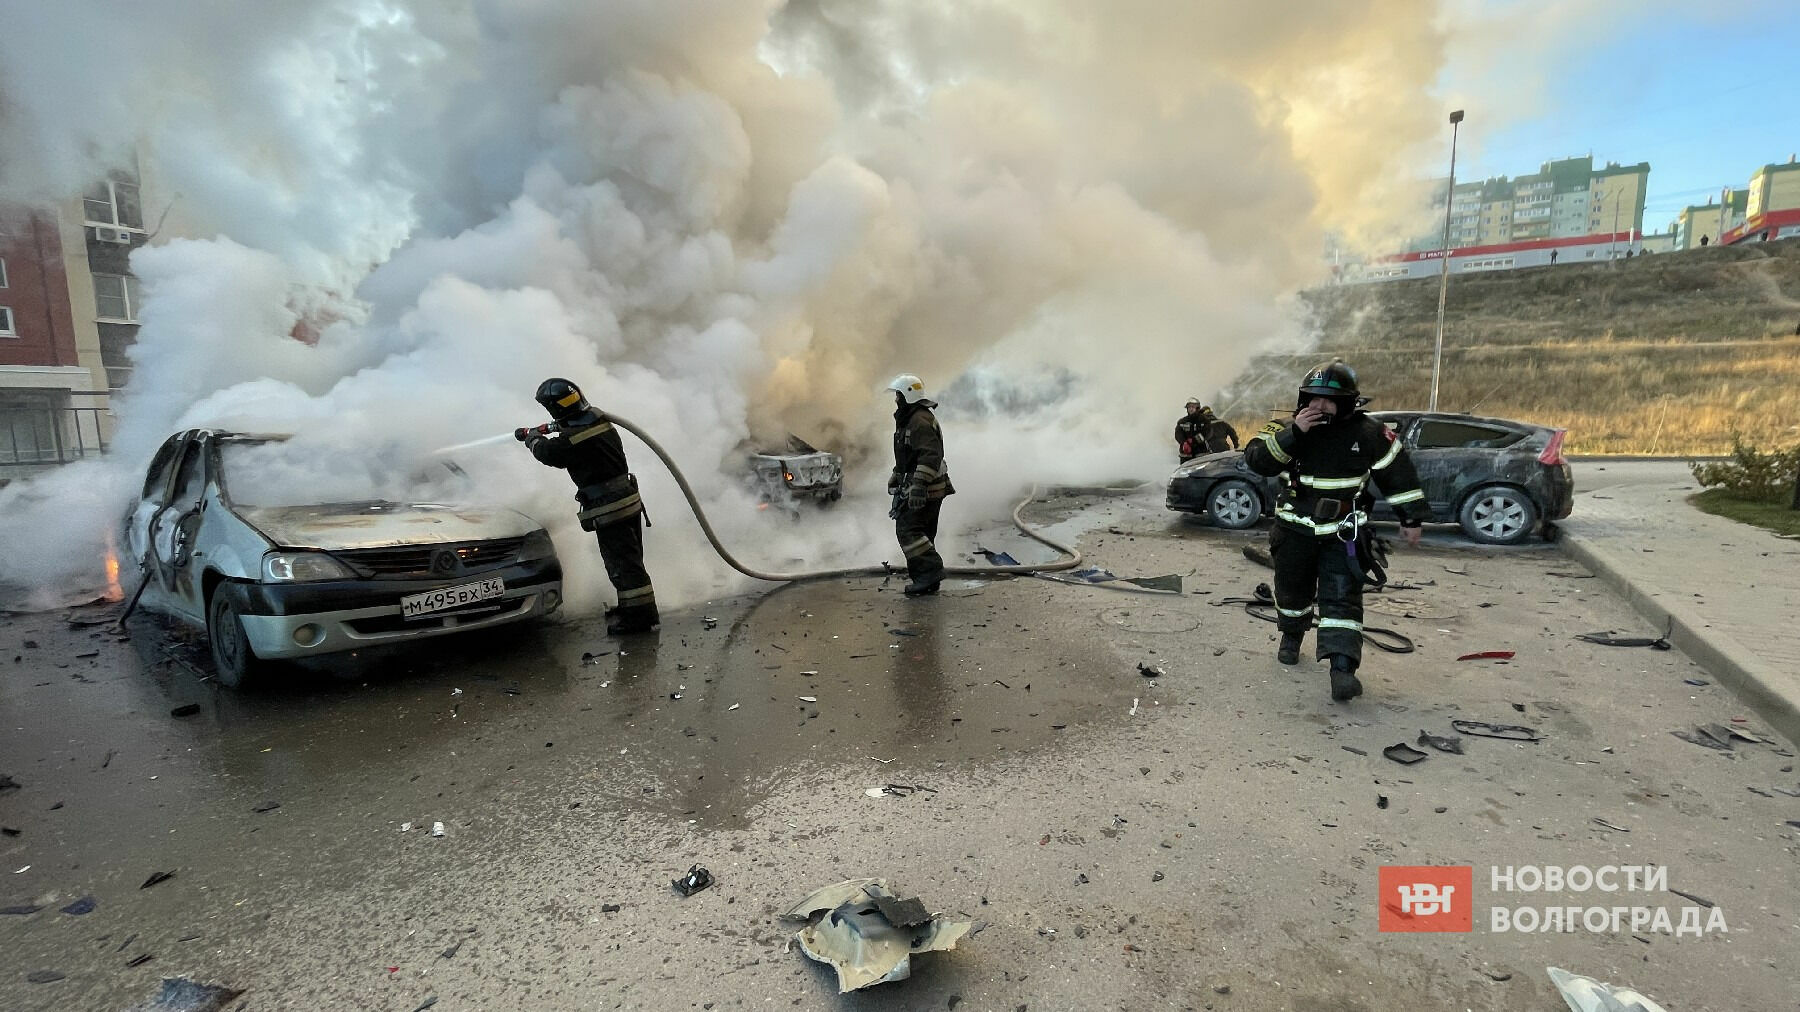 Версии взрыва автомобиля в ЖК Комарово высказали в соцсетях волгоградцы